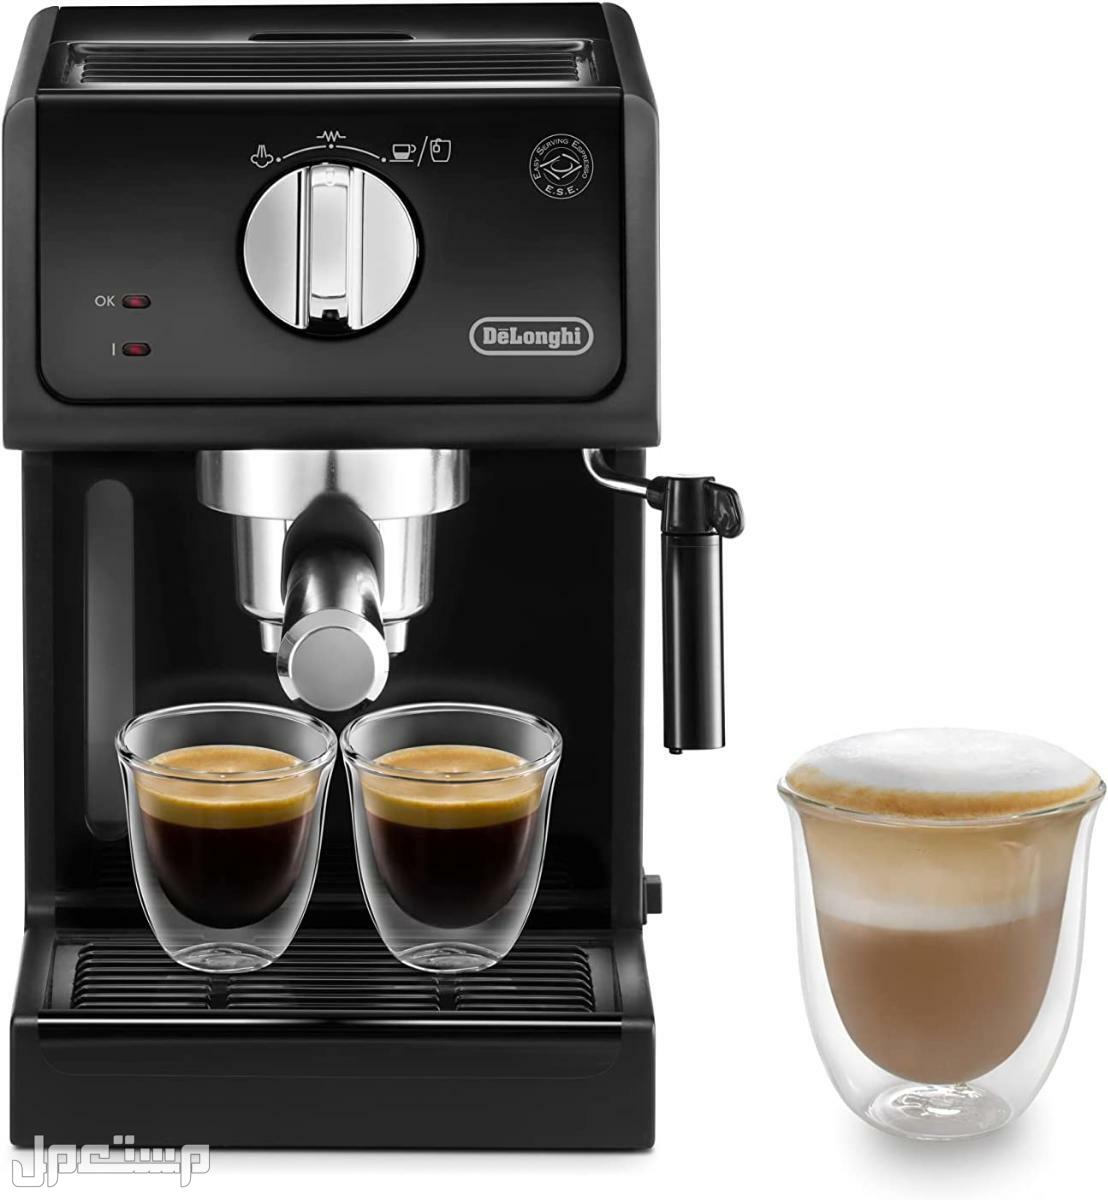 عيوب ومميزات ومواصفات وسعر ماكينة قهوة ديلونجى ديديكا في الكويت لماذا عليك شراء ماكينة قهوة ديلونجي ديديكا ؟